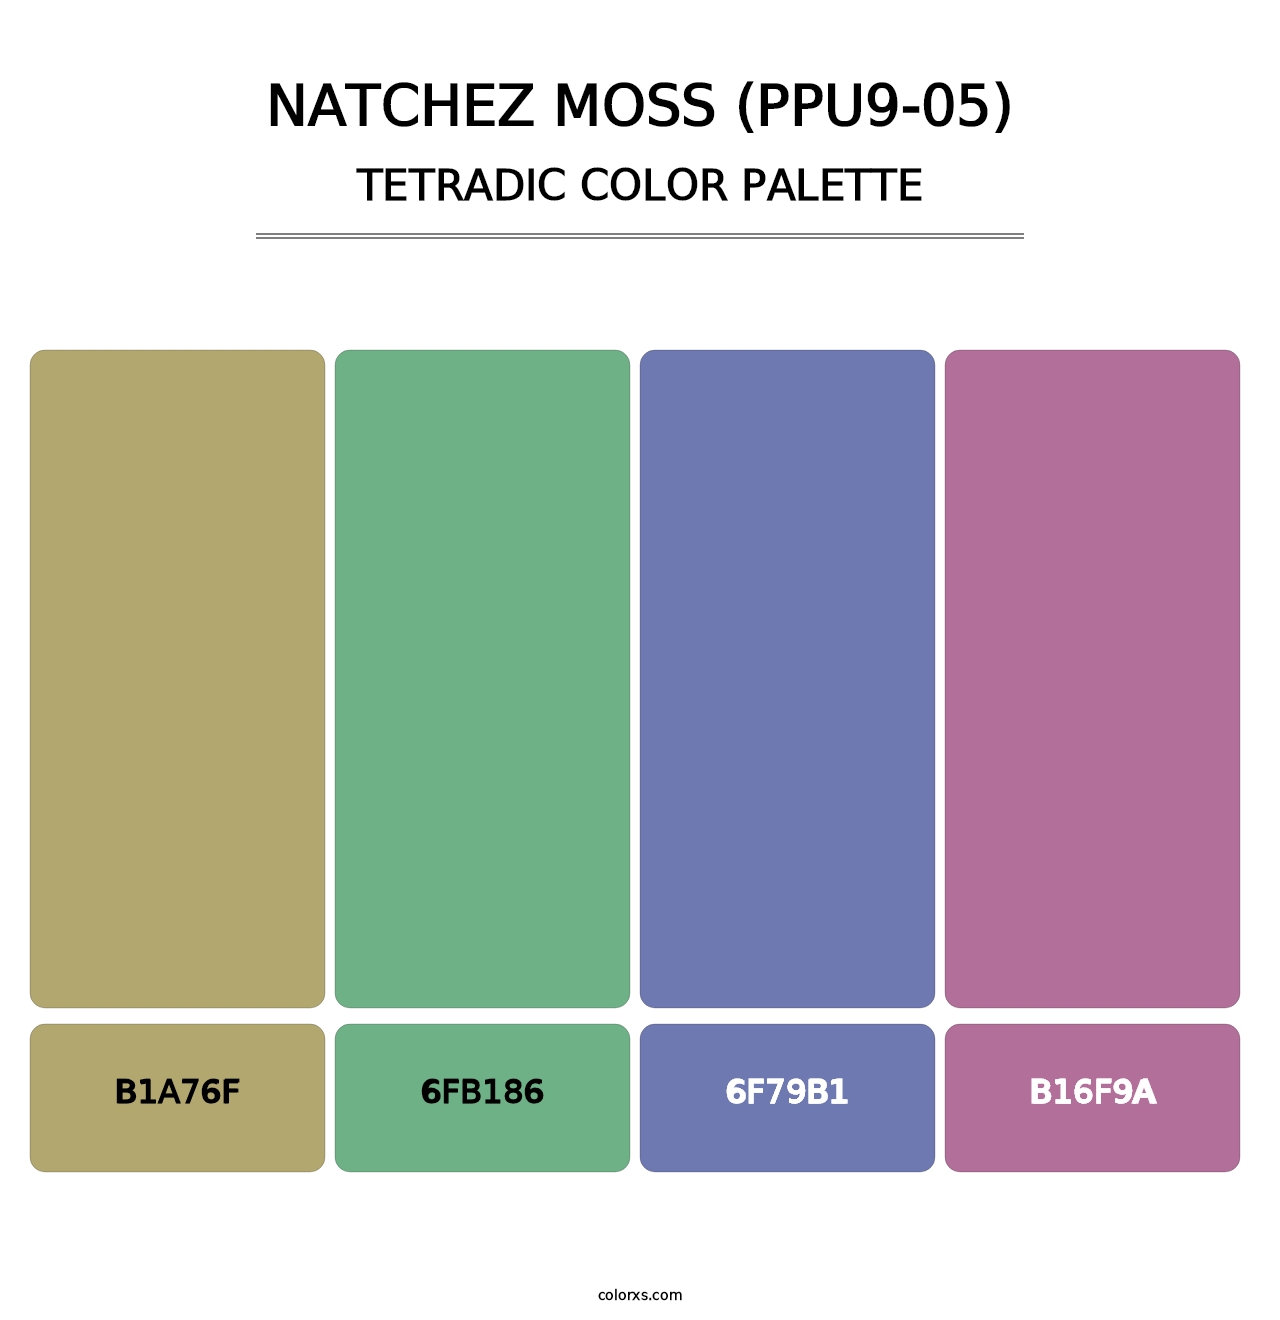 Natchez Moss (PPU9-05) - Tetradic Color Palette